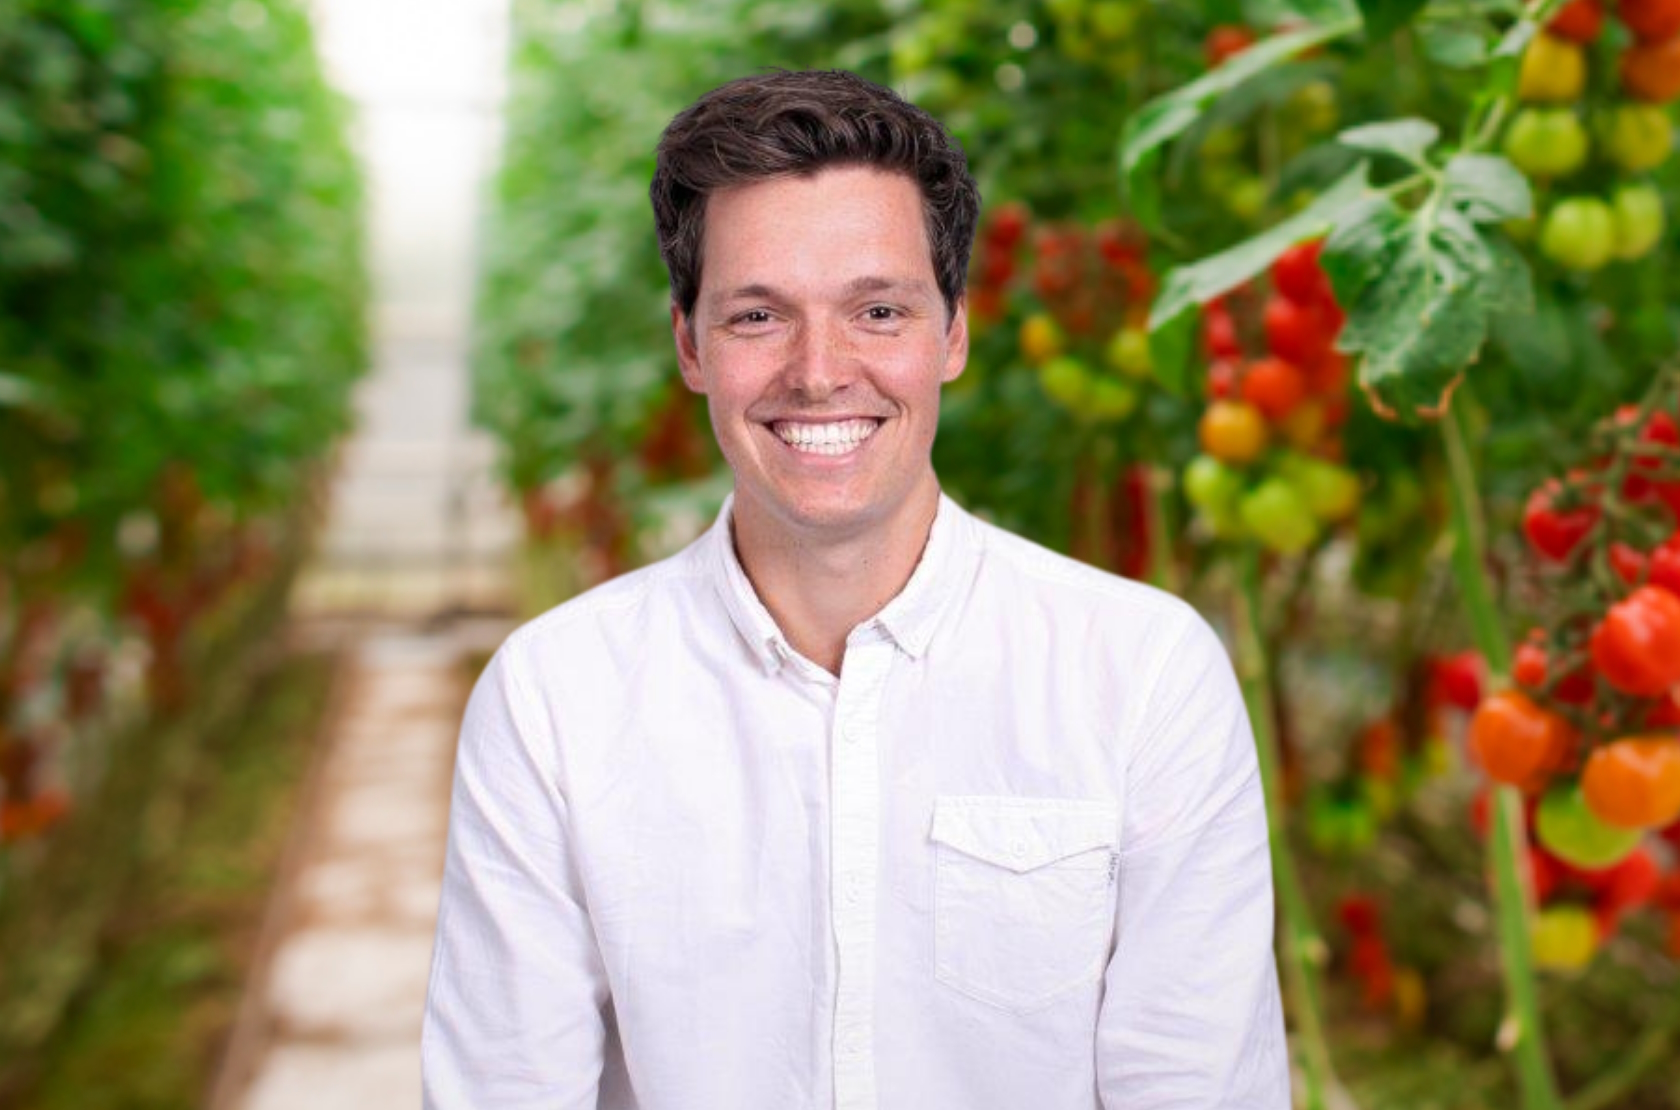 Tim van Steekelenburg in Greenhouse with Tomatoes